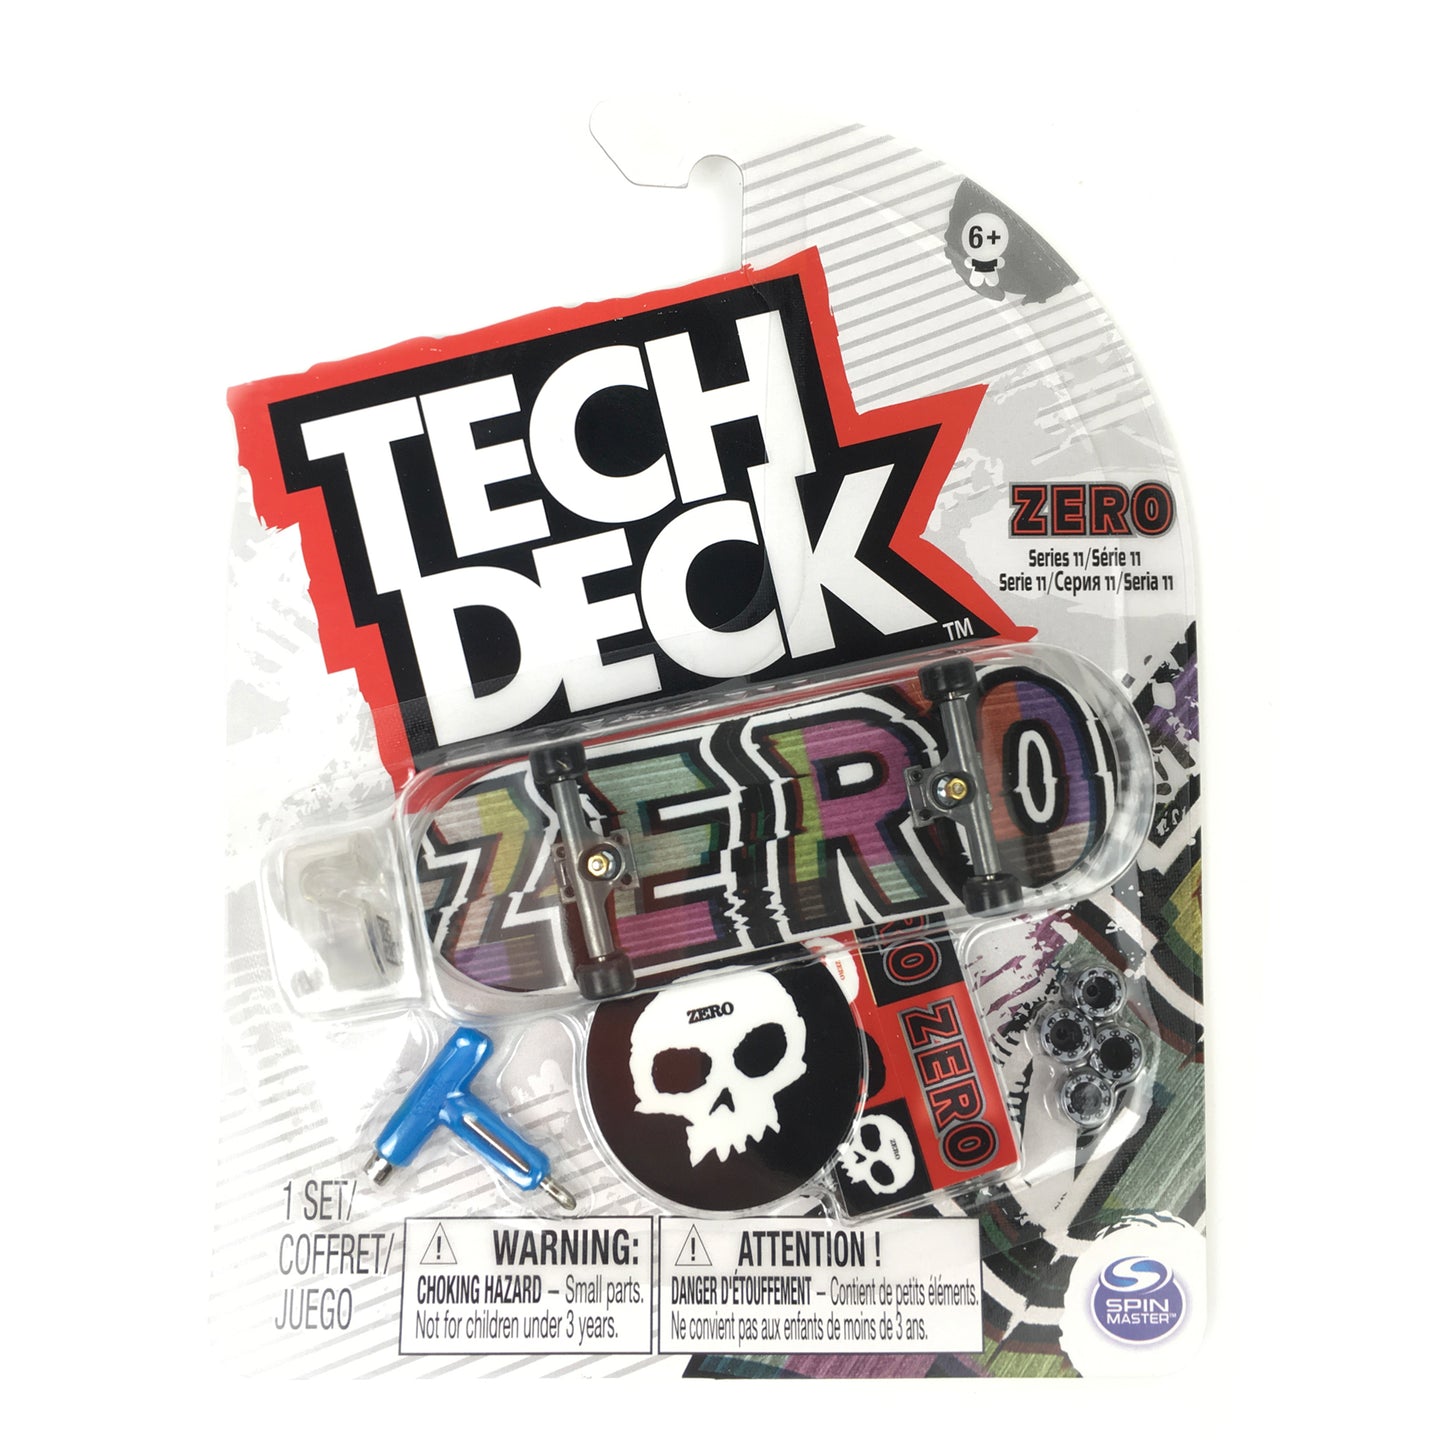 Zero Digital Font Tech Deck - Series 11 - Prime Delux Store